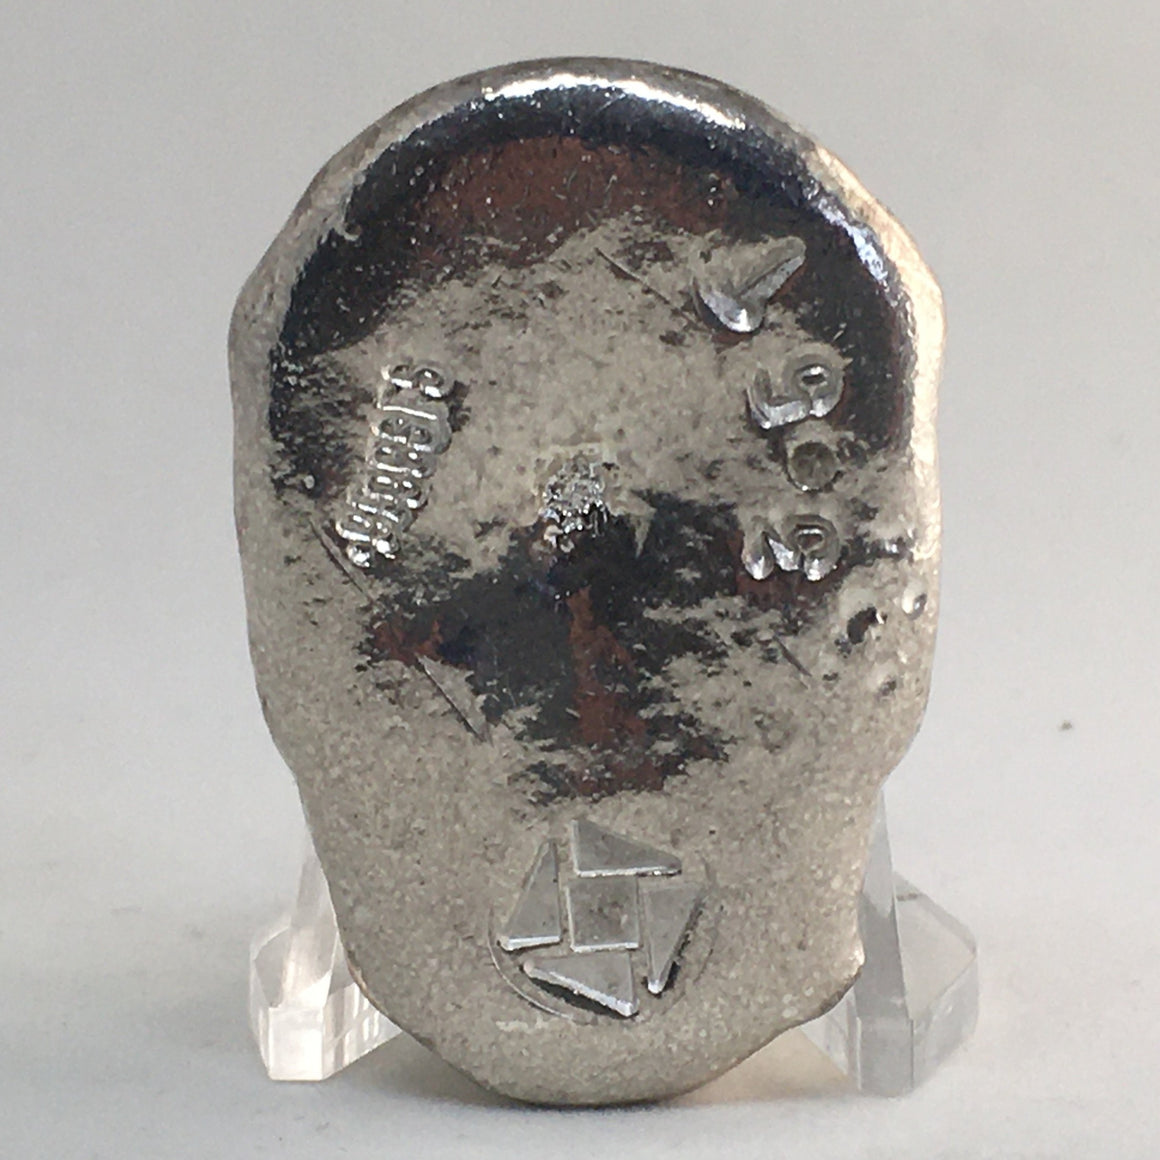 Biker Skull by Tomoko's Enterprize, 3.5oz .999 Fine Silver Hand Poured Art